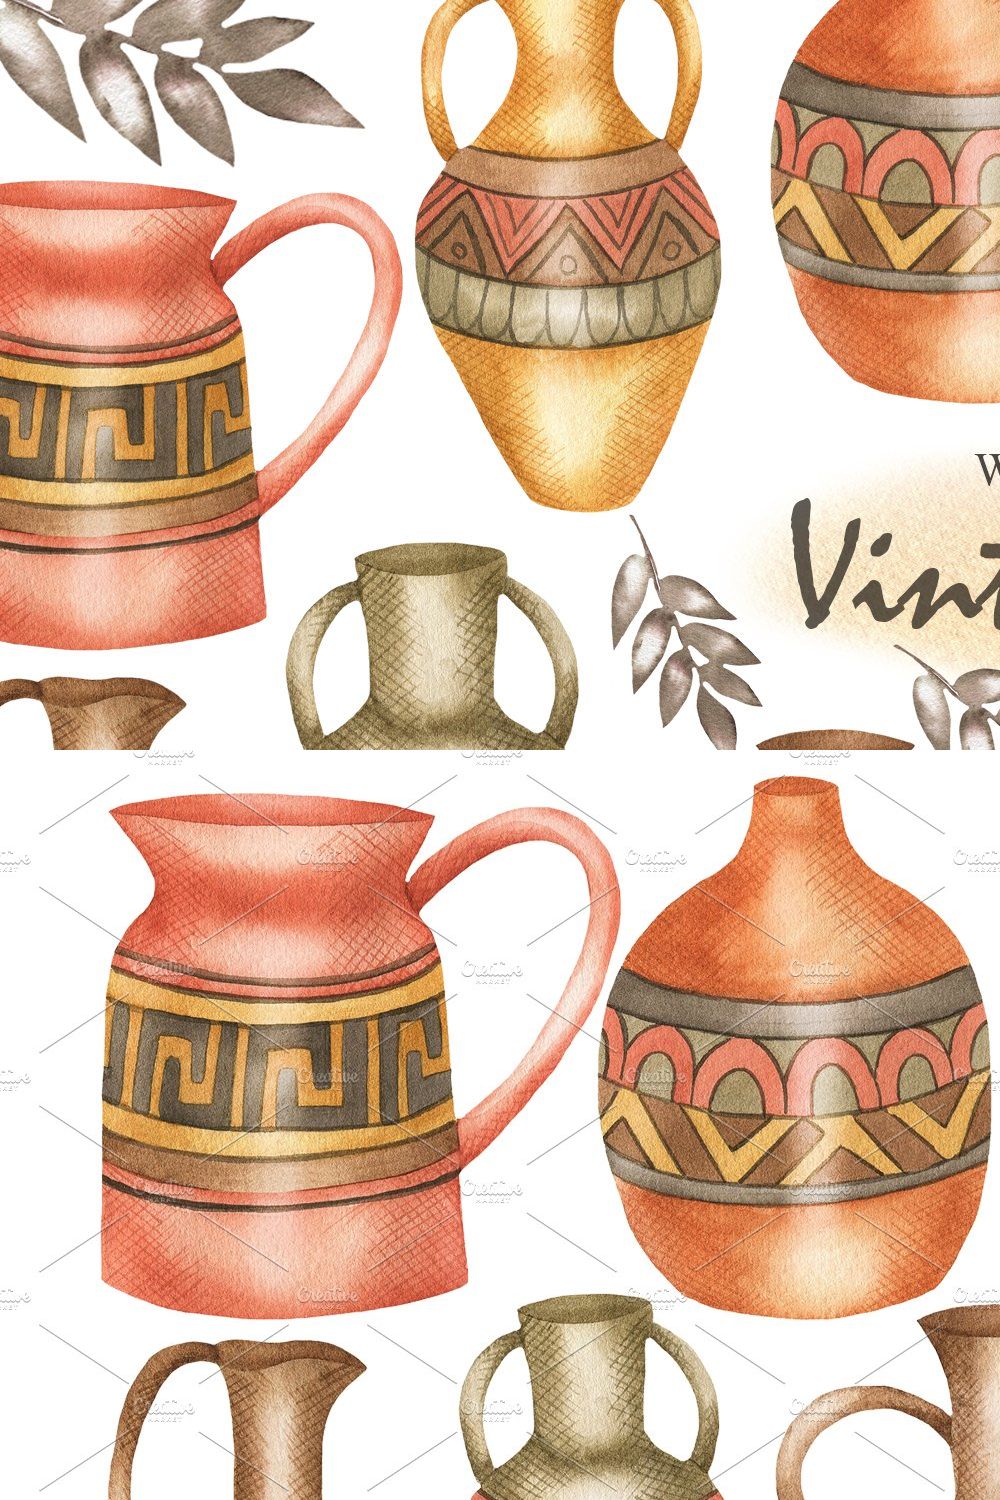 Watercolor Vintage Pots, Vases pinterest preview image.